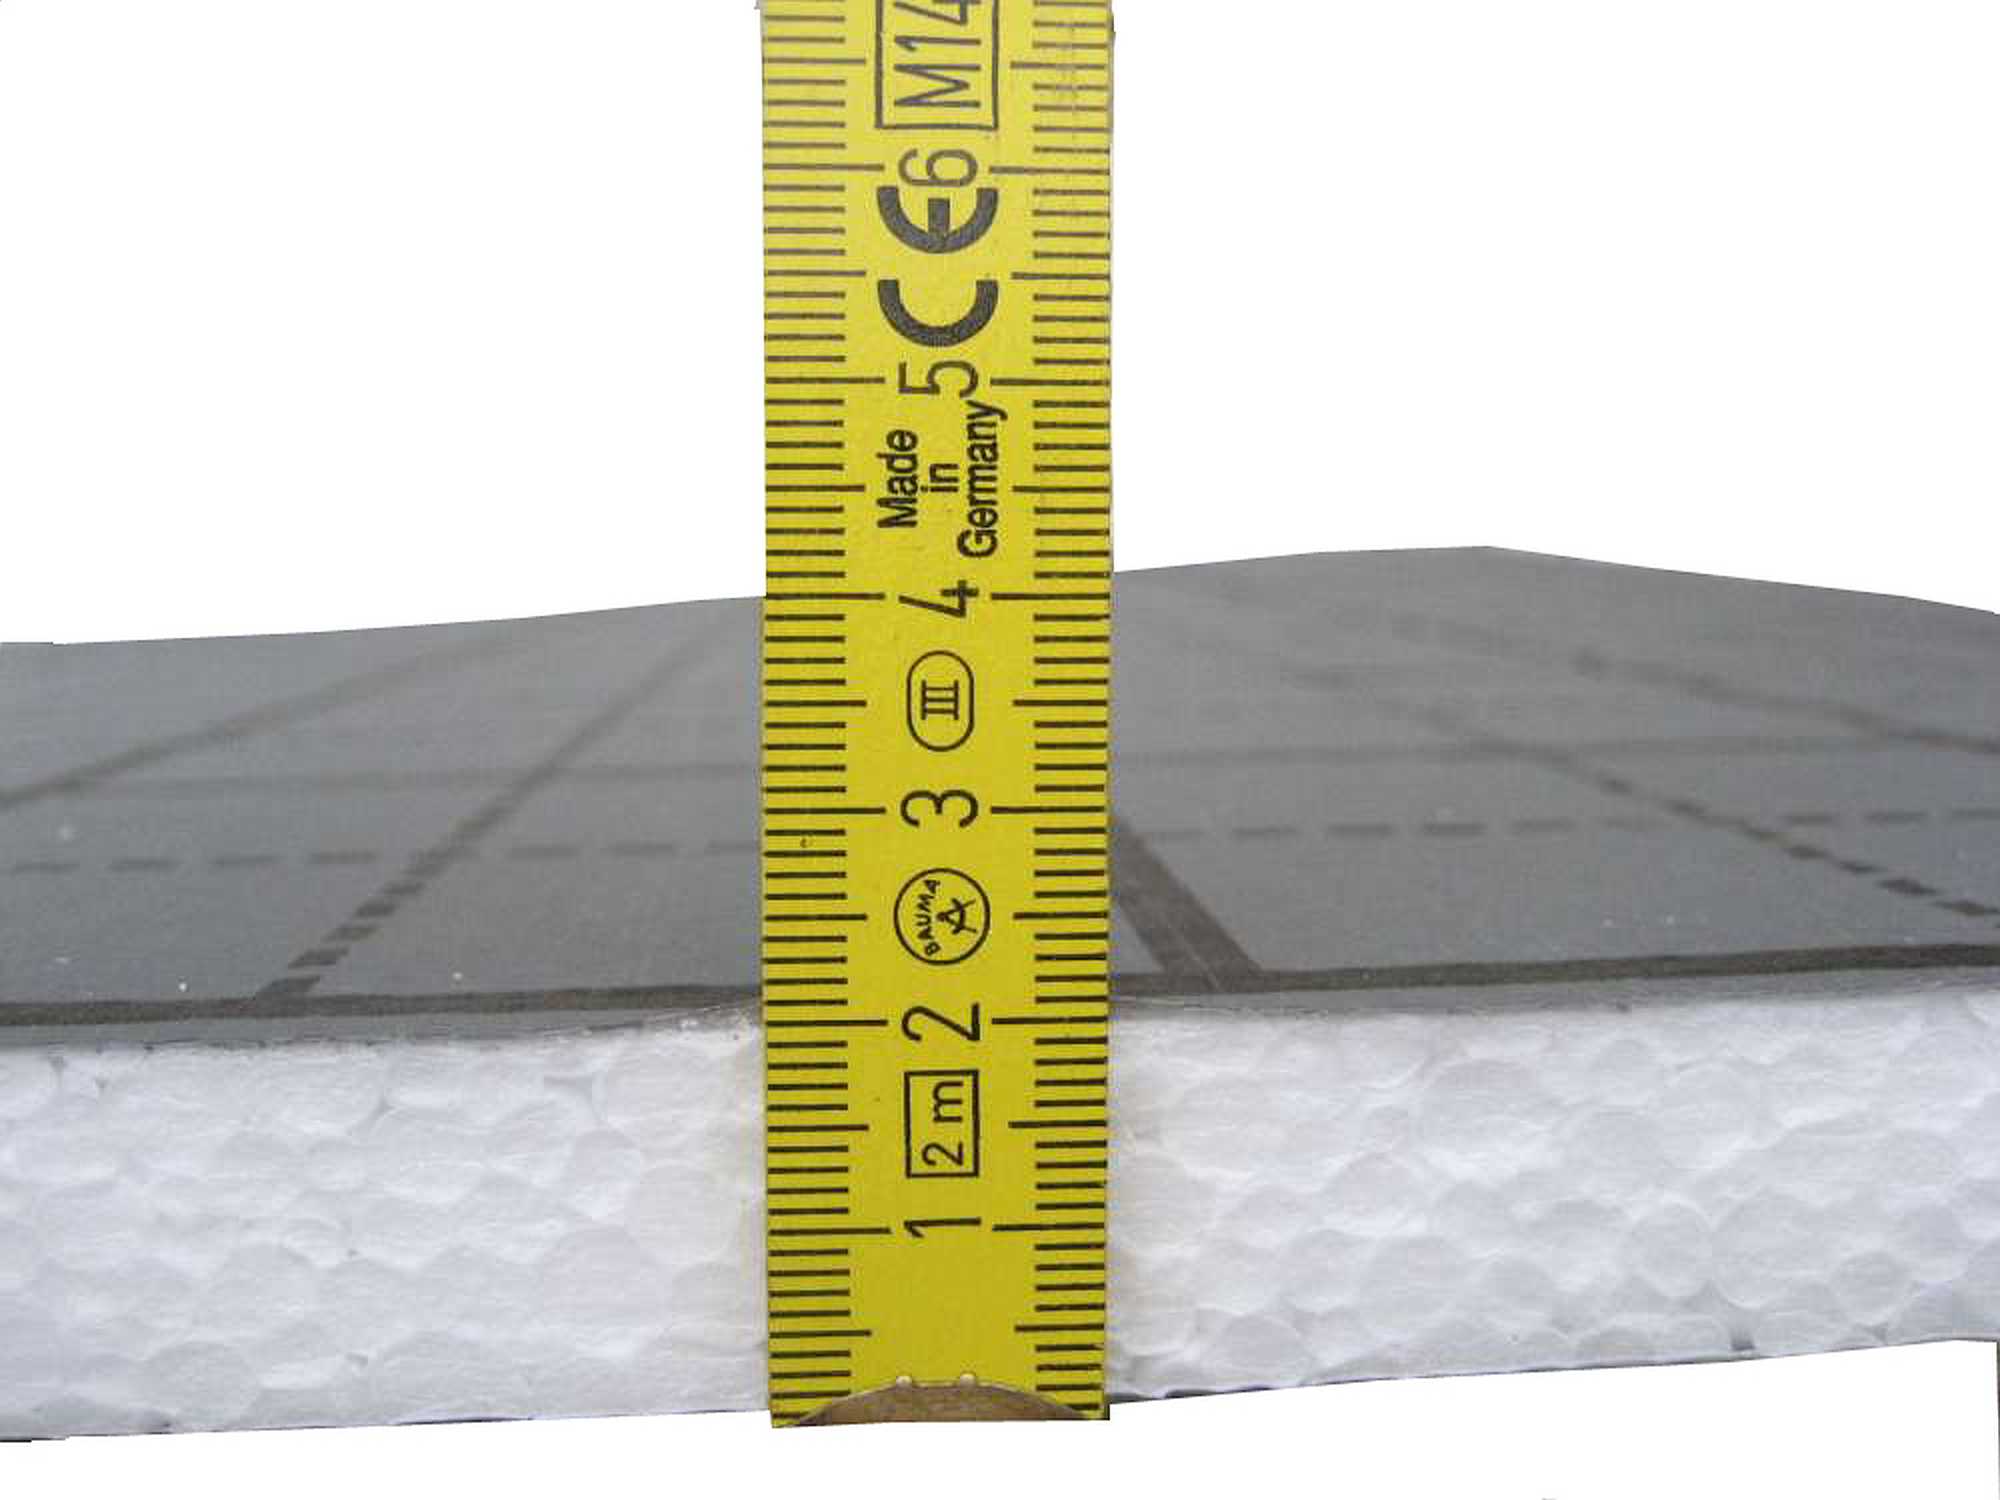 Tackerplatte Fußbodenheizung Warmwasser, Sani-TAC Komplettsystem 5m² oder 10m² mit Verbundrohr 16x2mm und RTL E-Regelbox Digital